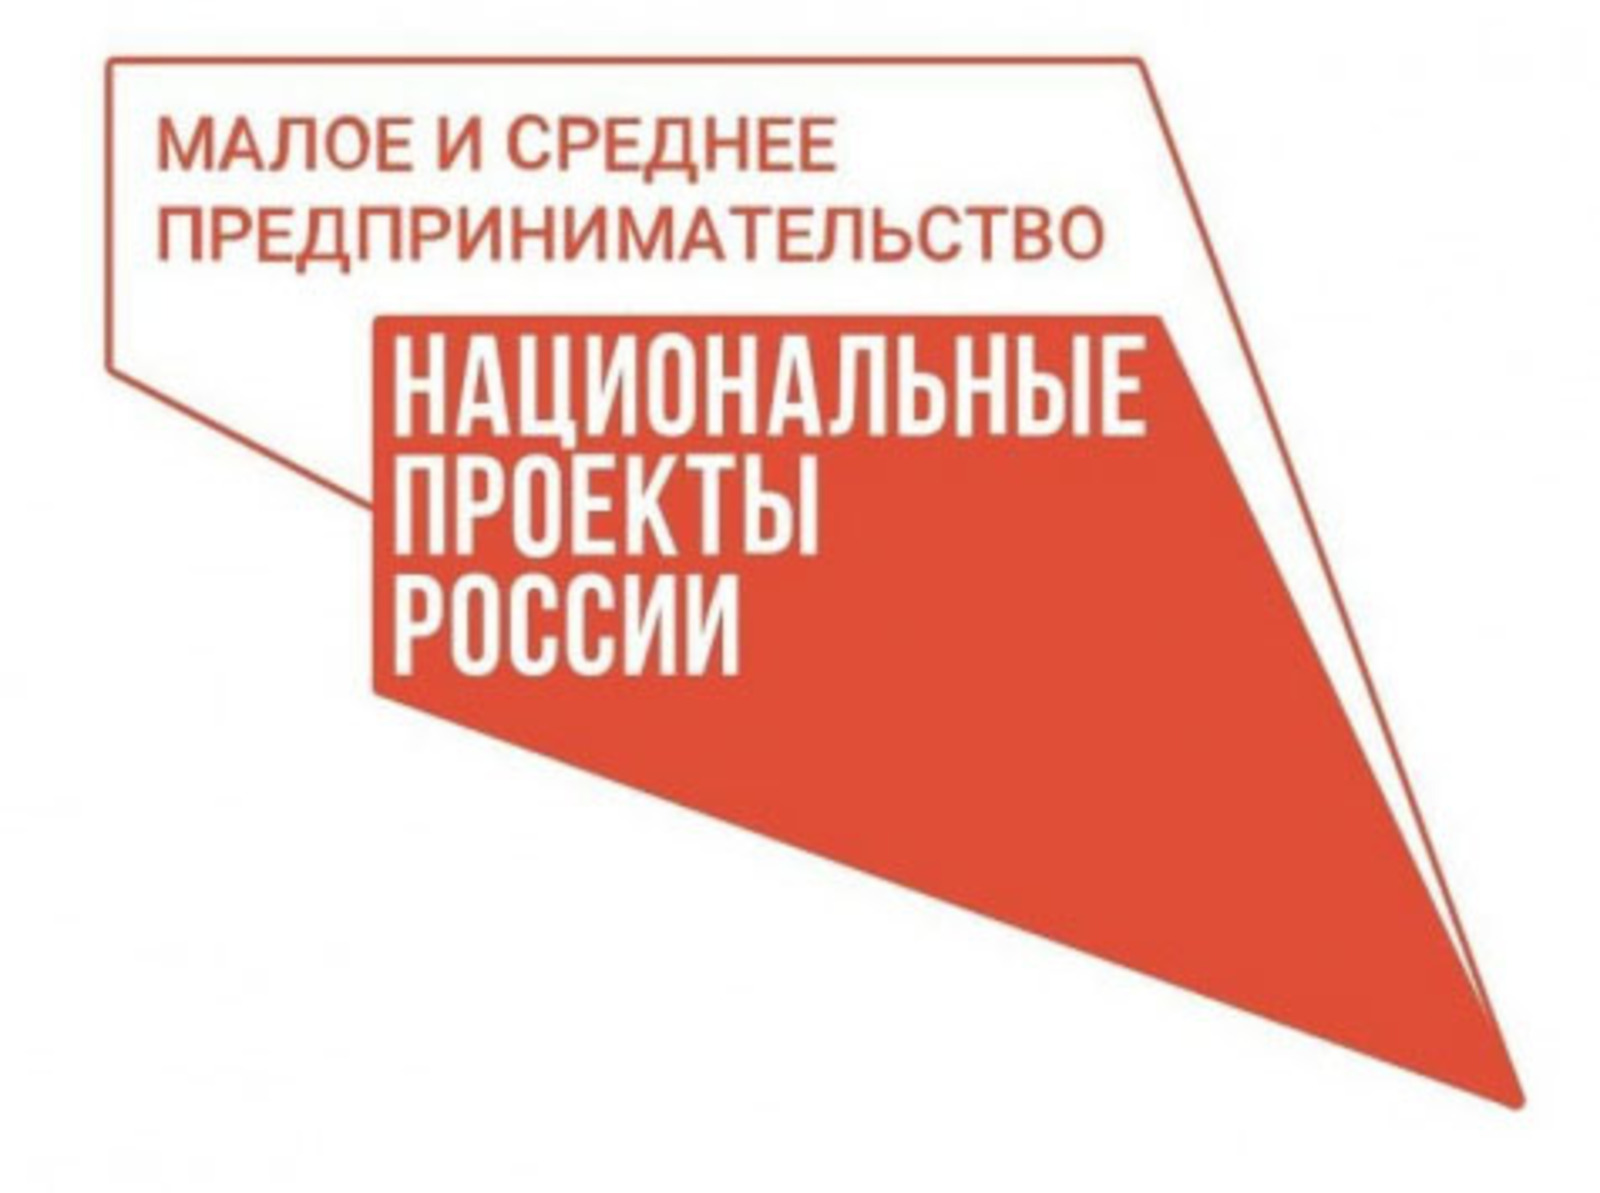 В Башкортостане численность занятых в сфере креативных индустрий составила более 34 тысяч человек